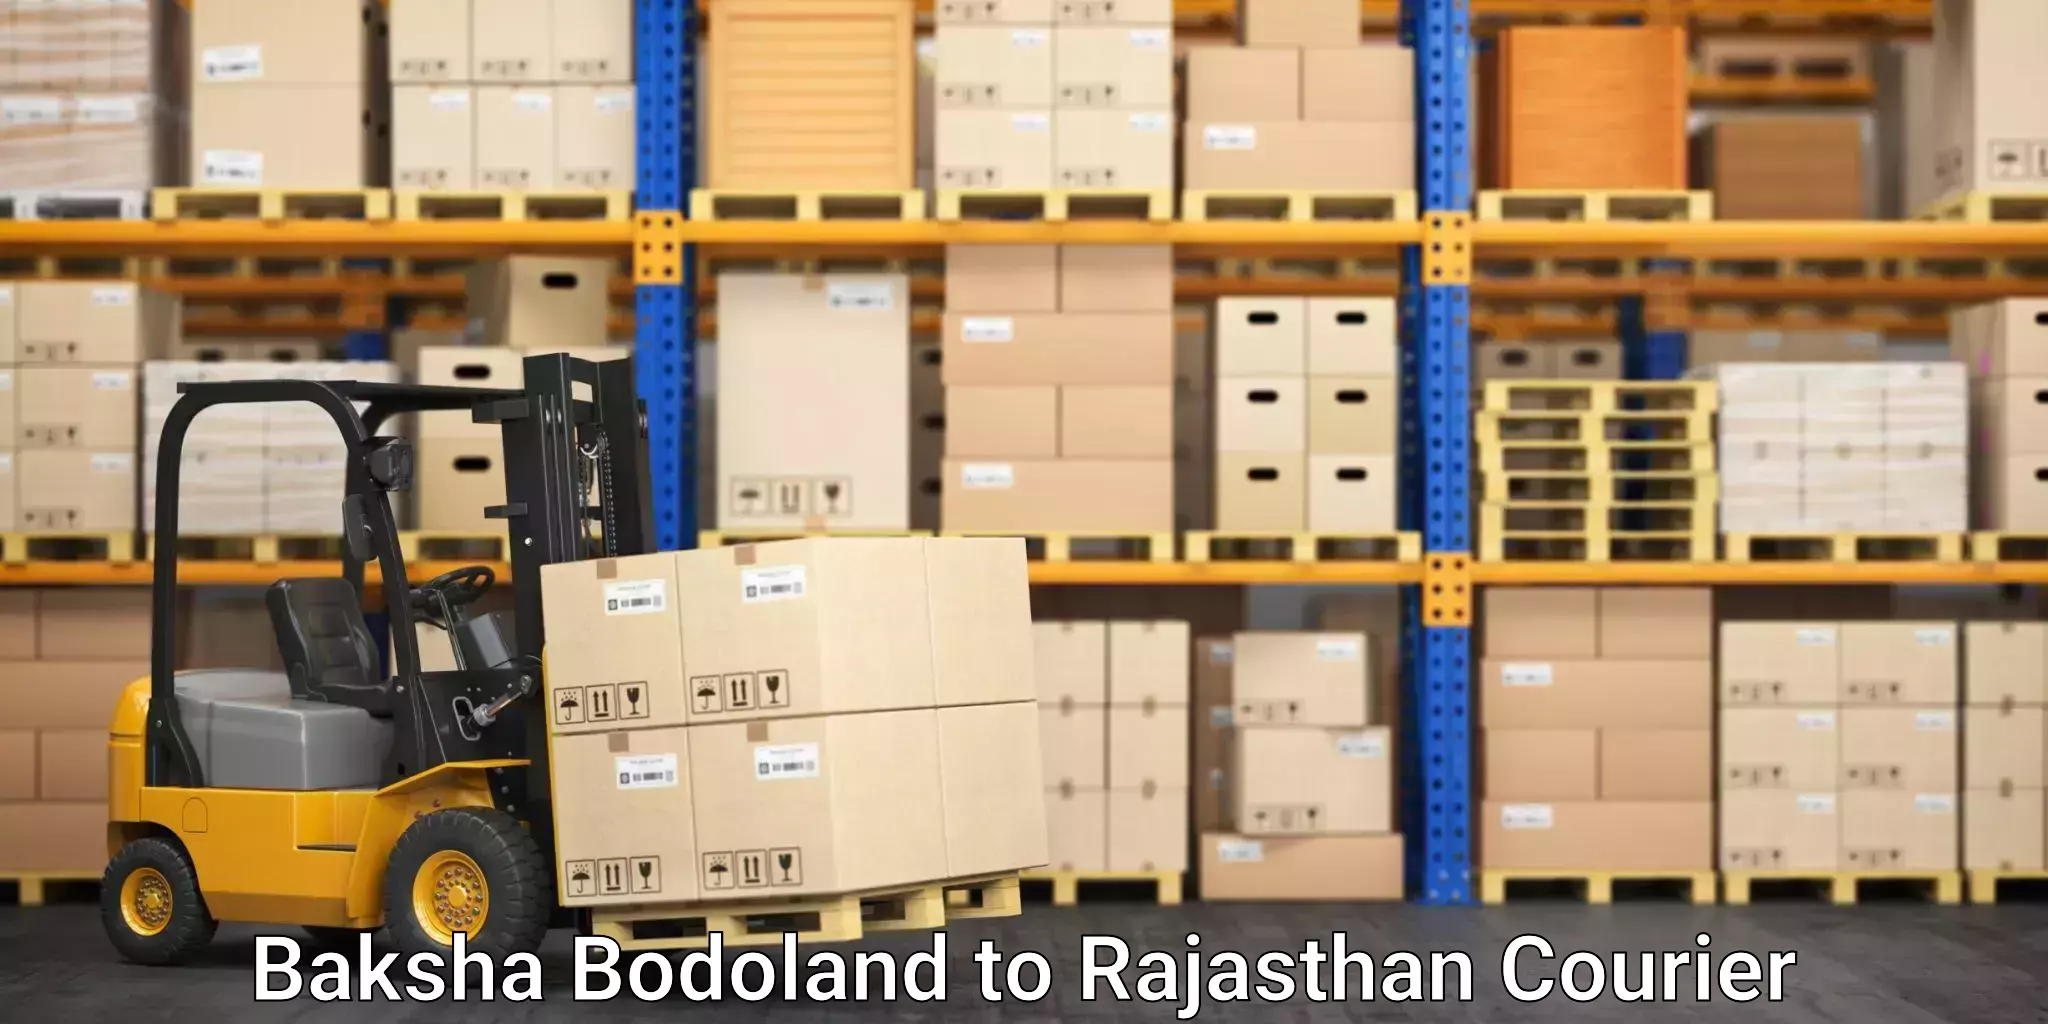 Nationwide shipping services Baksha Bodoland to Nimbahera